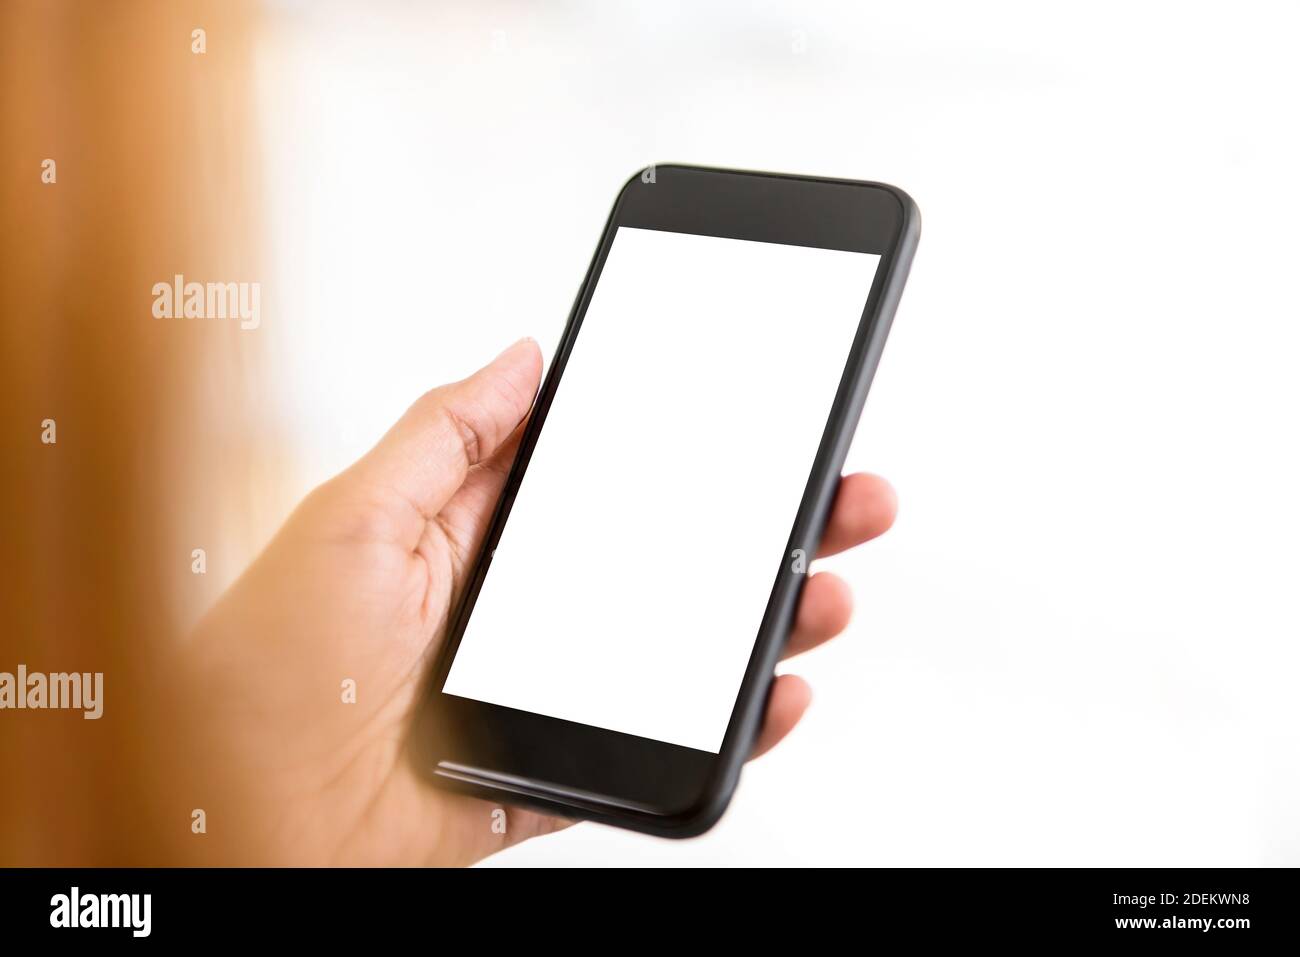 Frau hält, leerer weißer Bildschirm, Smartphone in der Hand - Menschen und Technologiekonzepte Stockfoto